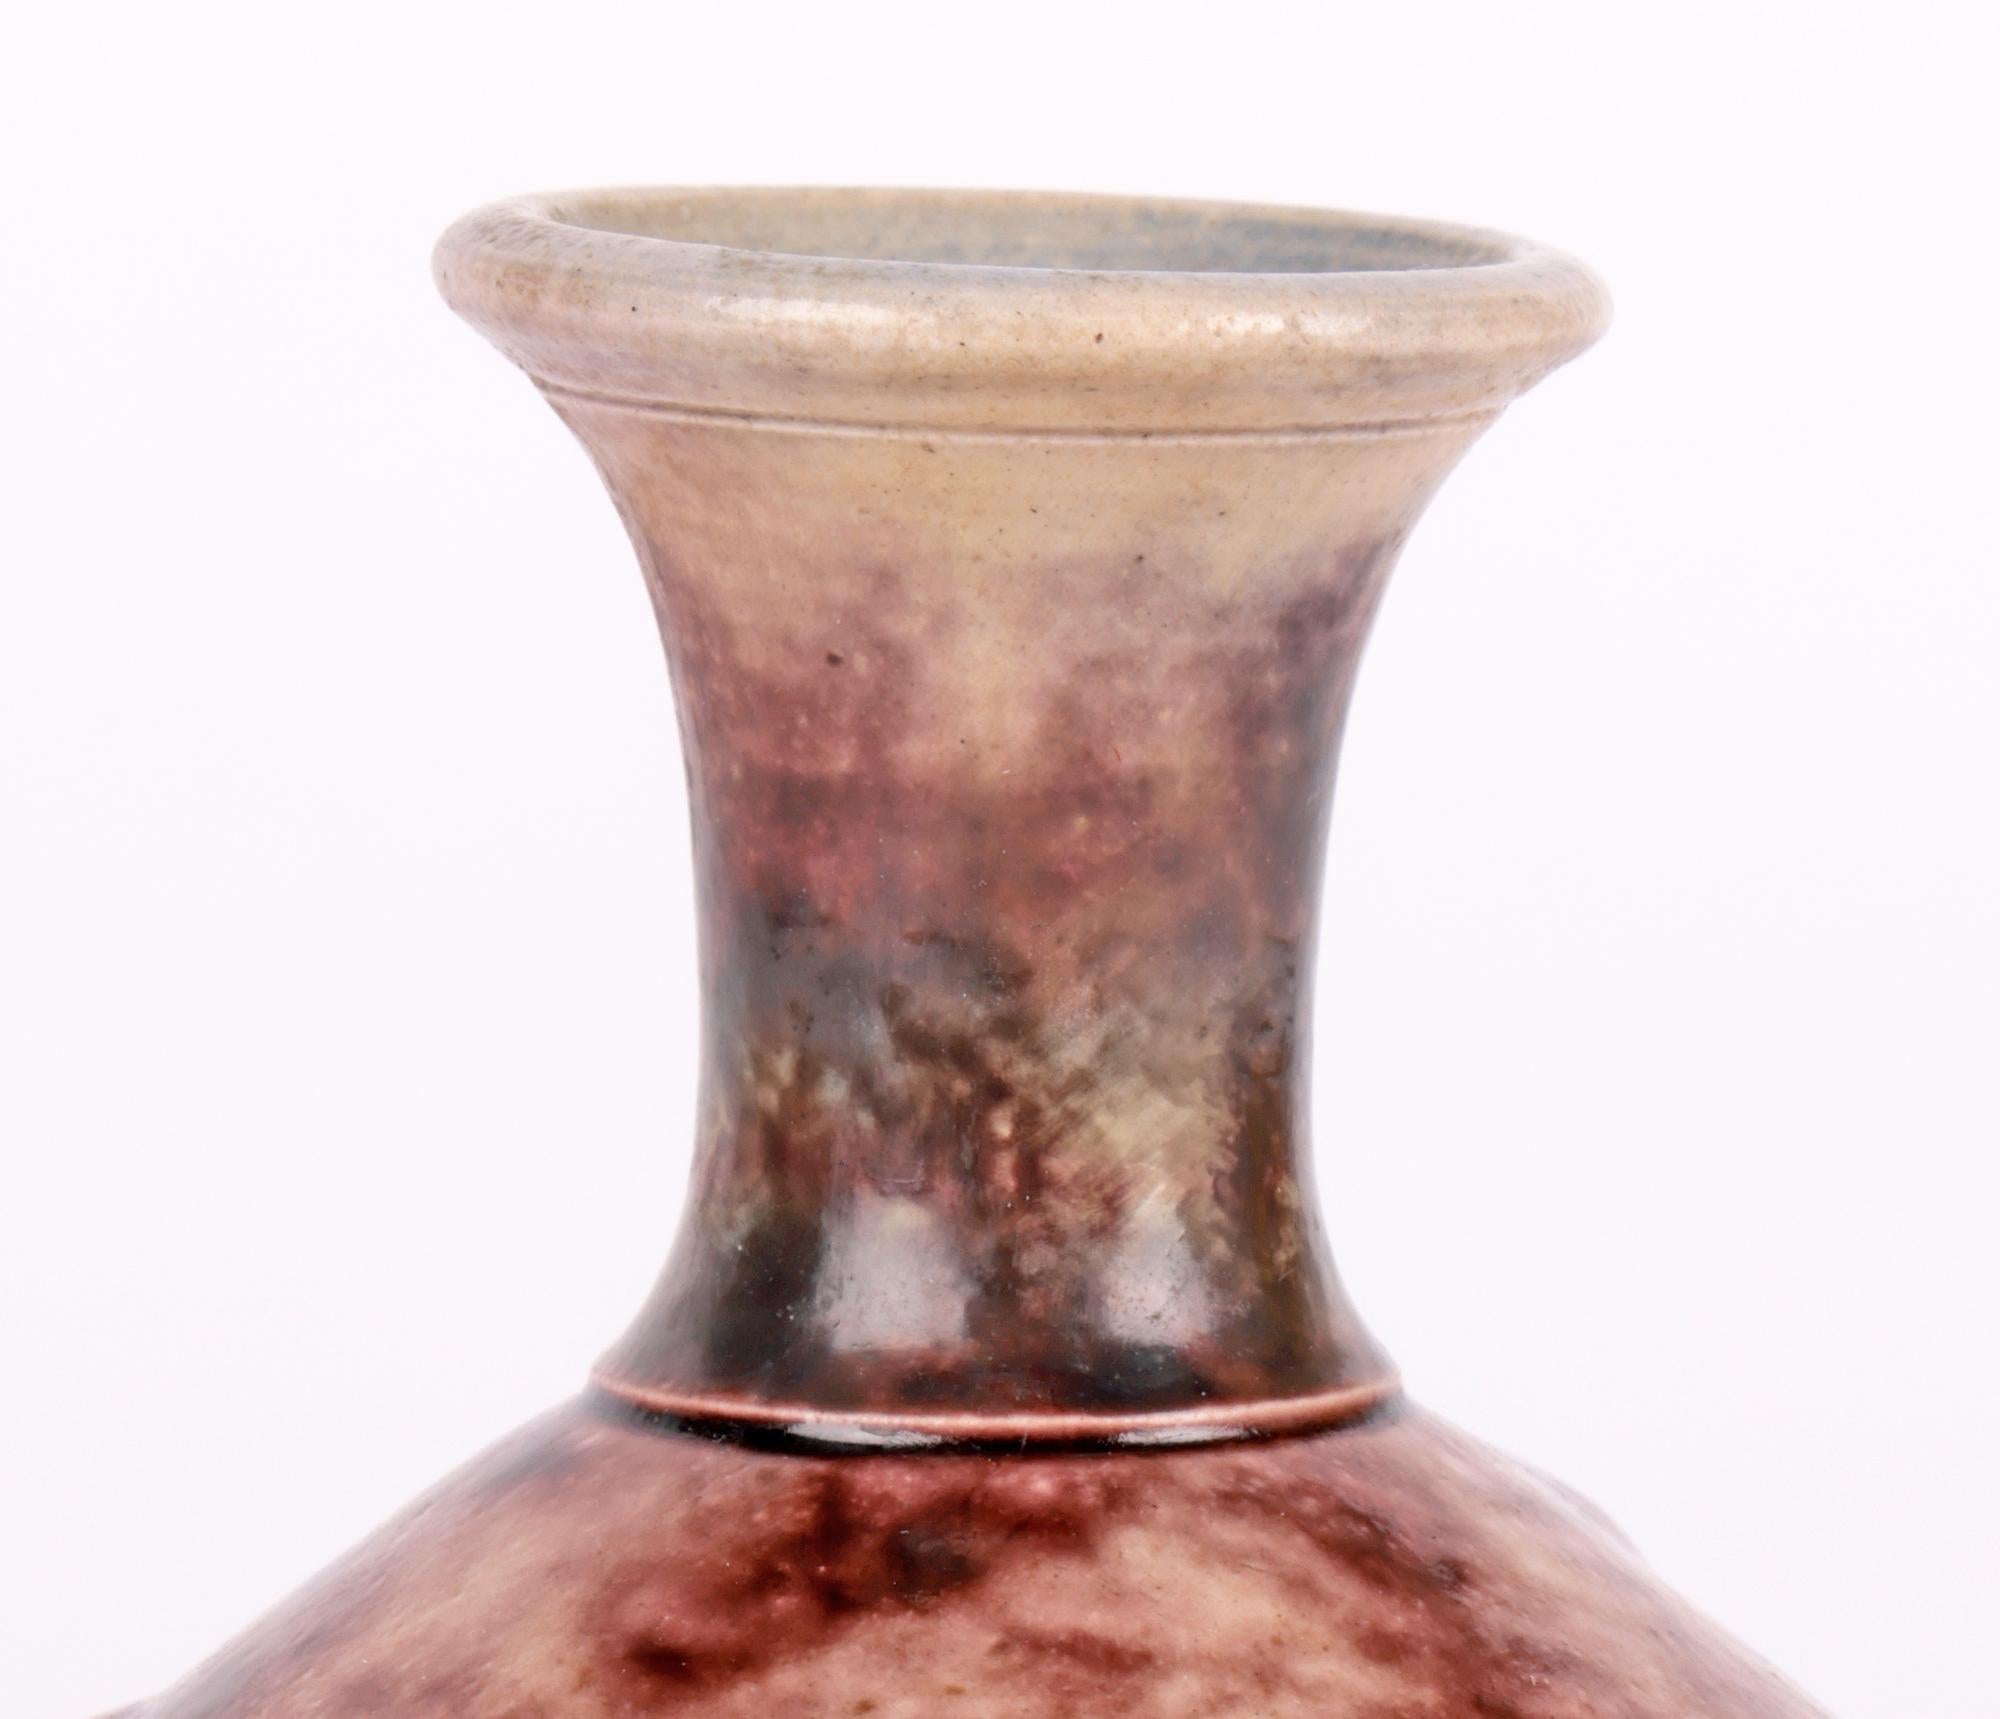 Un élégant vase en grès de Martin Brothers, de forme ovoïde avec un col cylindrique à la taille étroite, probablement un exemple assez précoce datant du 19ème siècle. Le vase repose sur une base ronde étroite avec un corps rond et bulbeux et un col